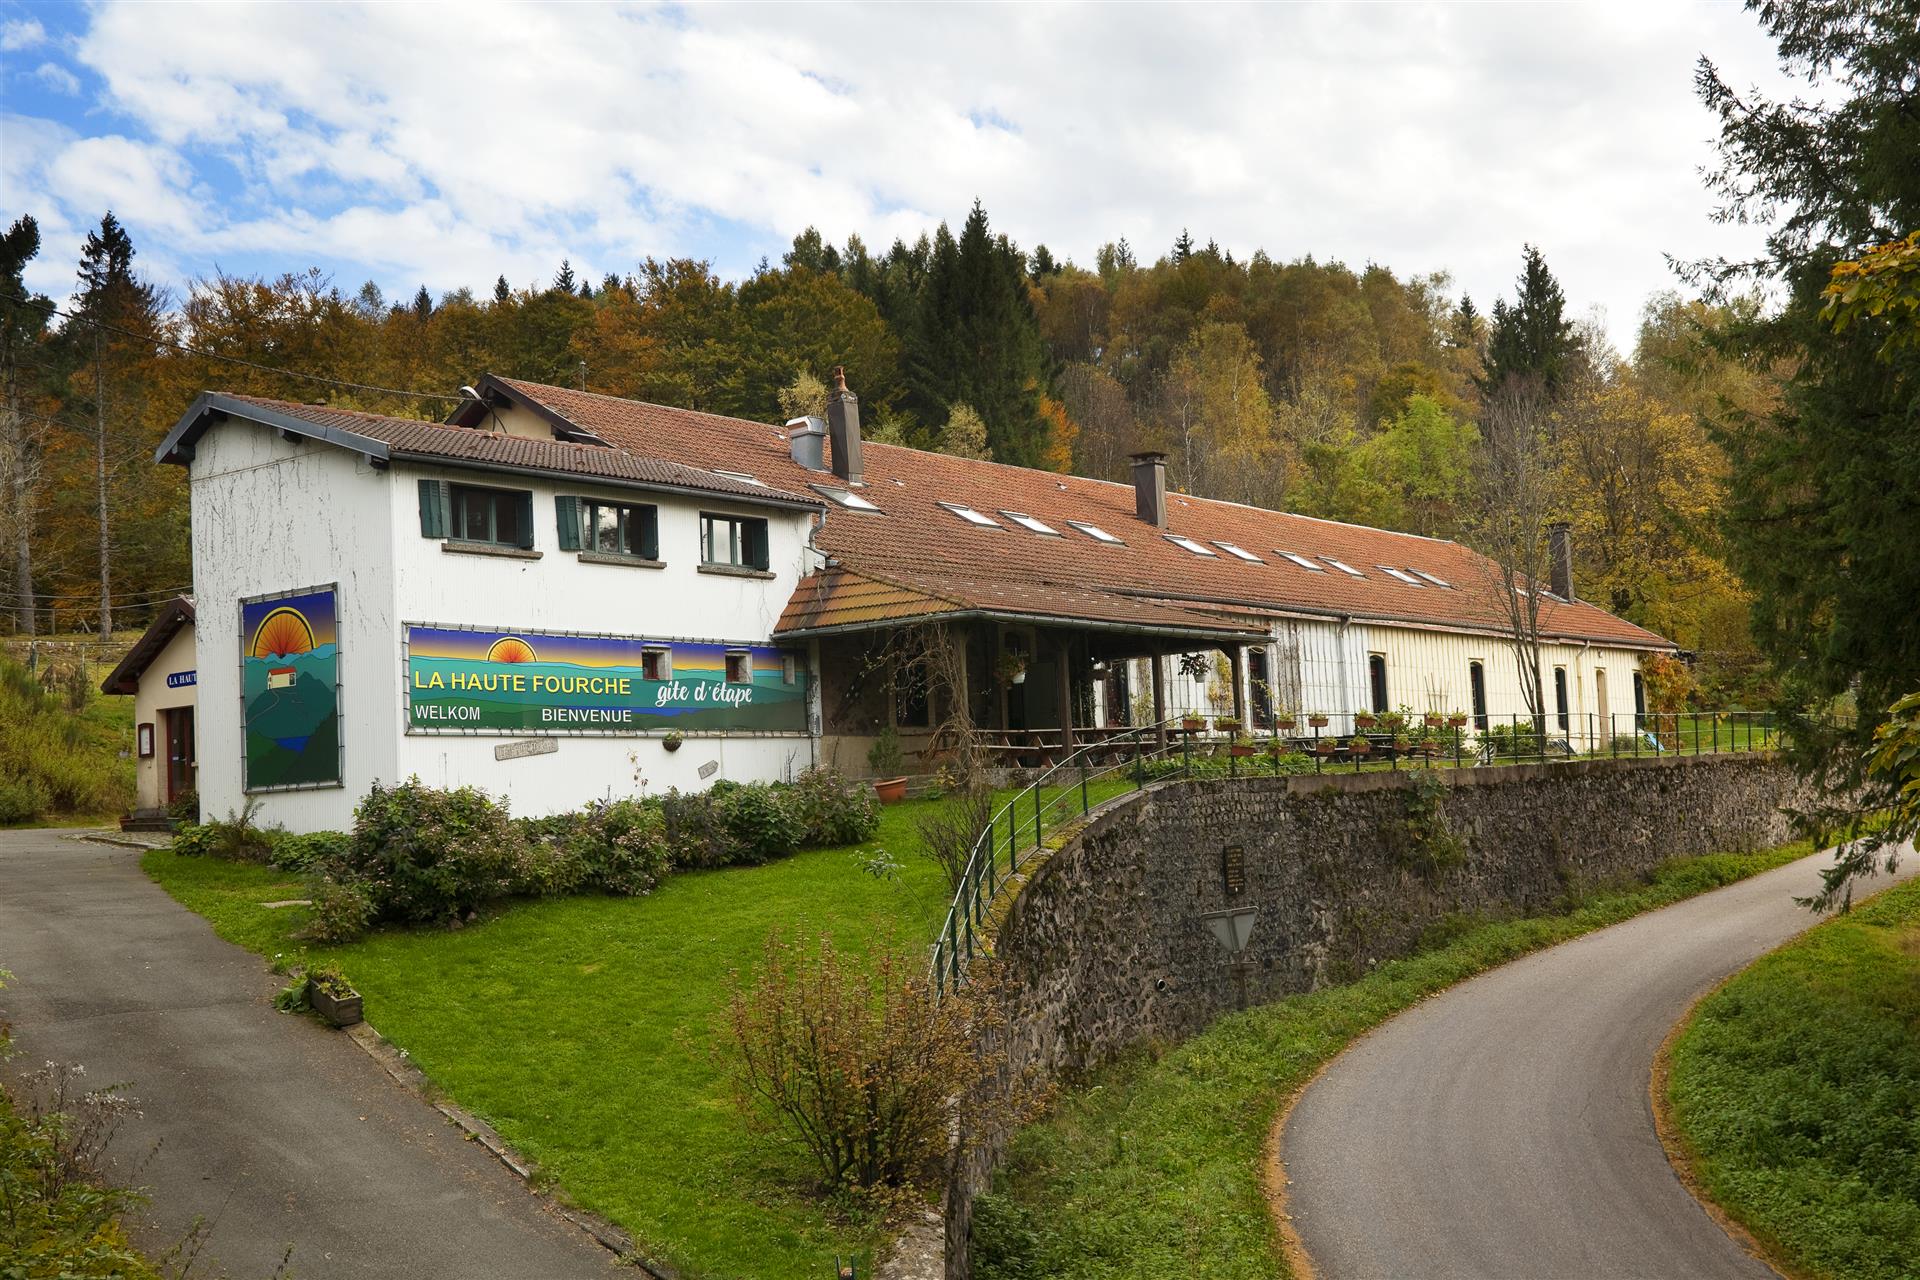 Voigezen Hostel și 2 case de vacanță de vânzare